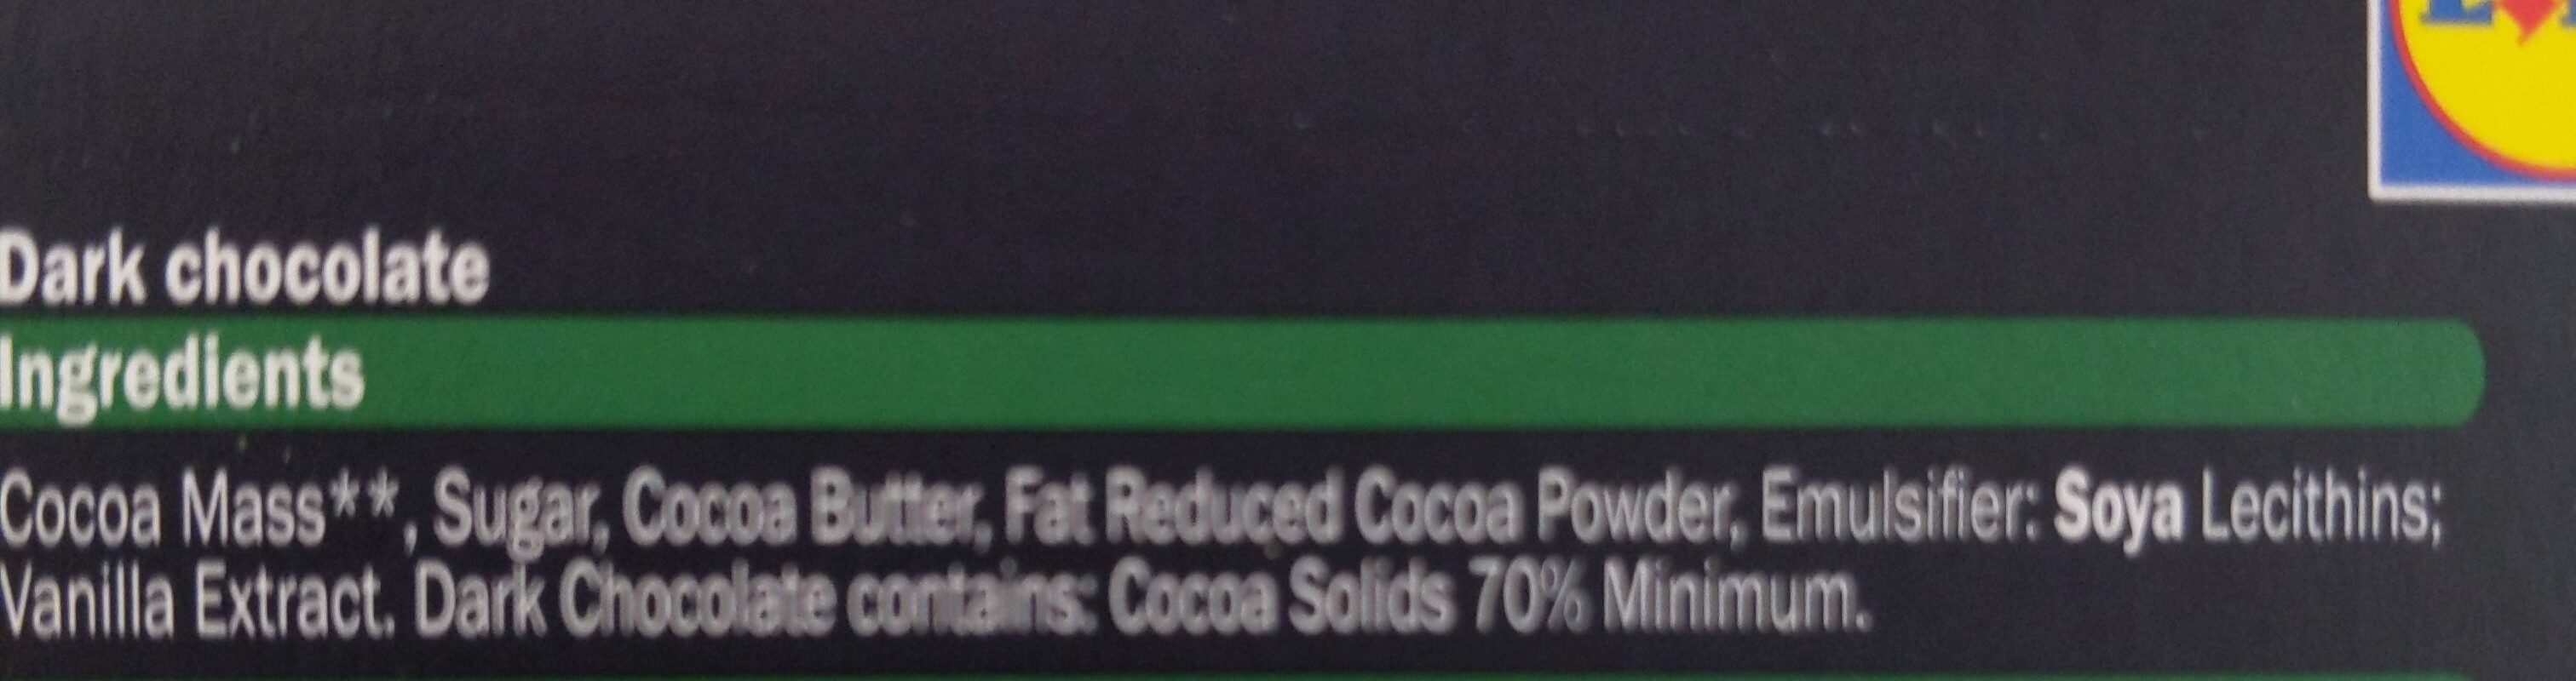 Madagaskar Edelschokolade 70% - Ingredients